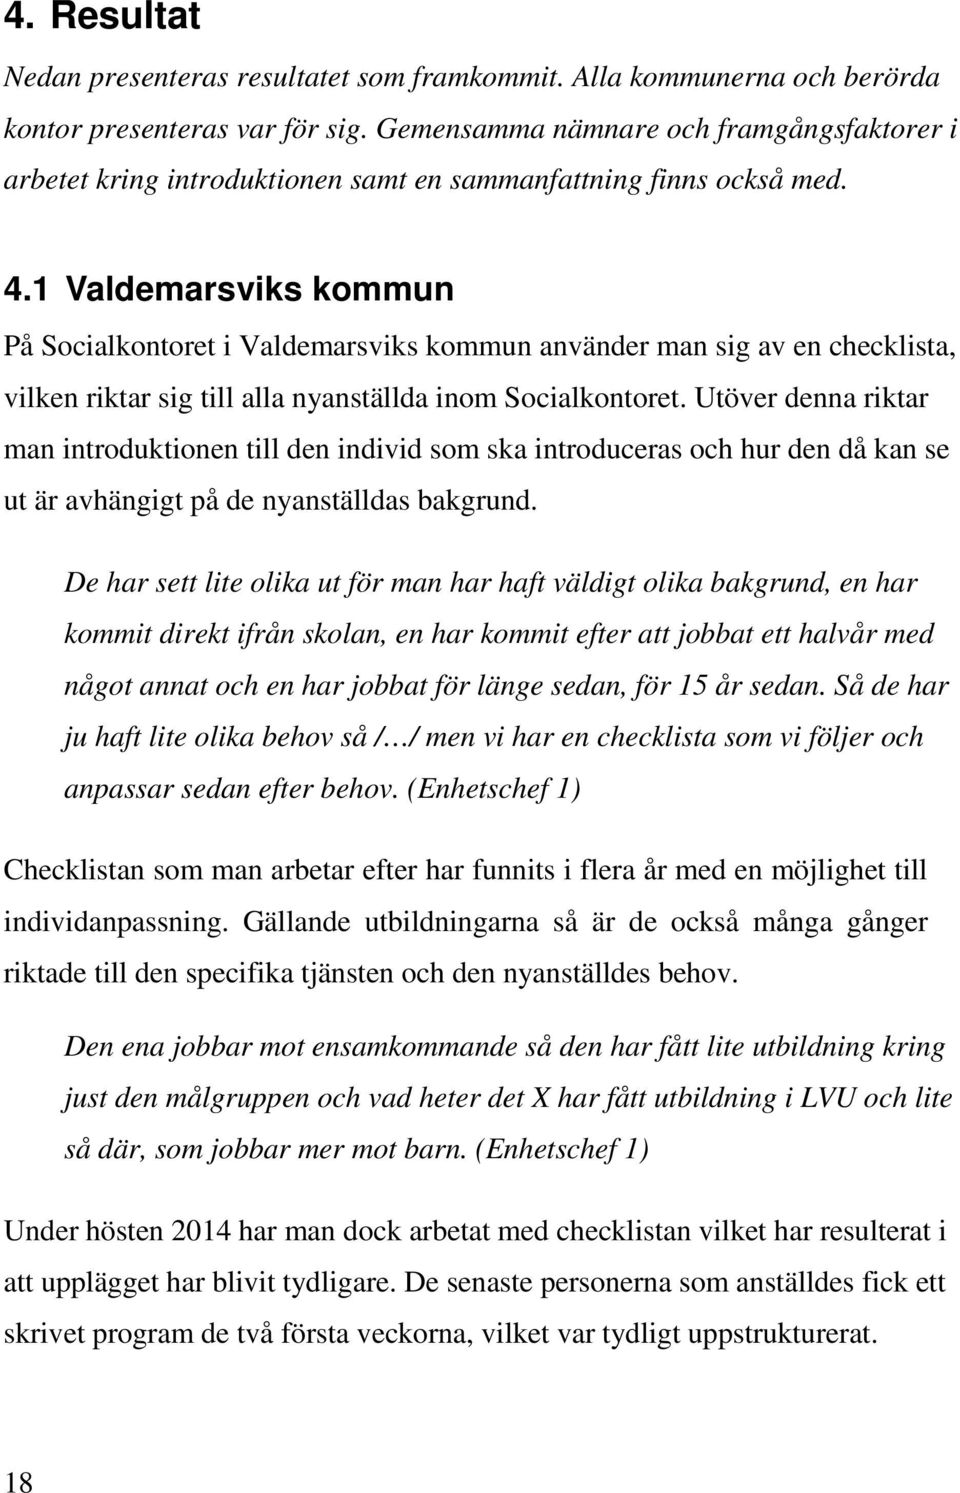 1 Valdemarsviks kommun På Socialkontoret i Valdemarsviks kommun använder man sig av en checklista, vilken riktar sig till alla nyanställda inom Socialkontoret.